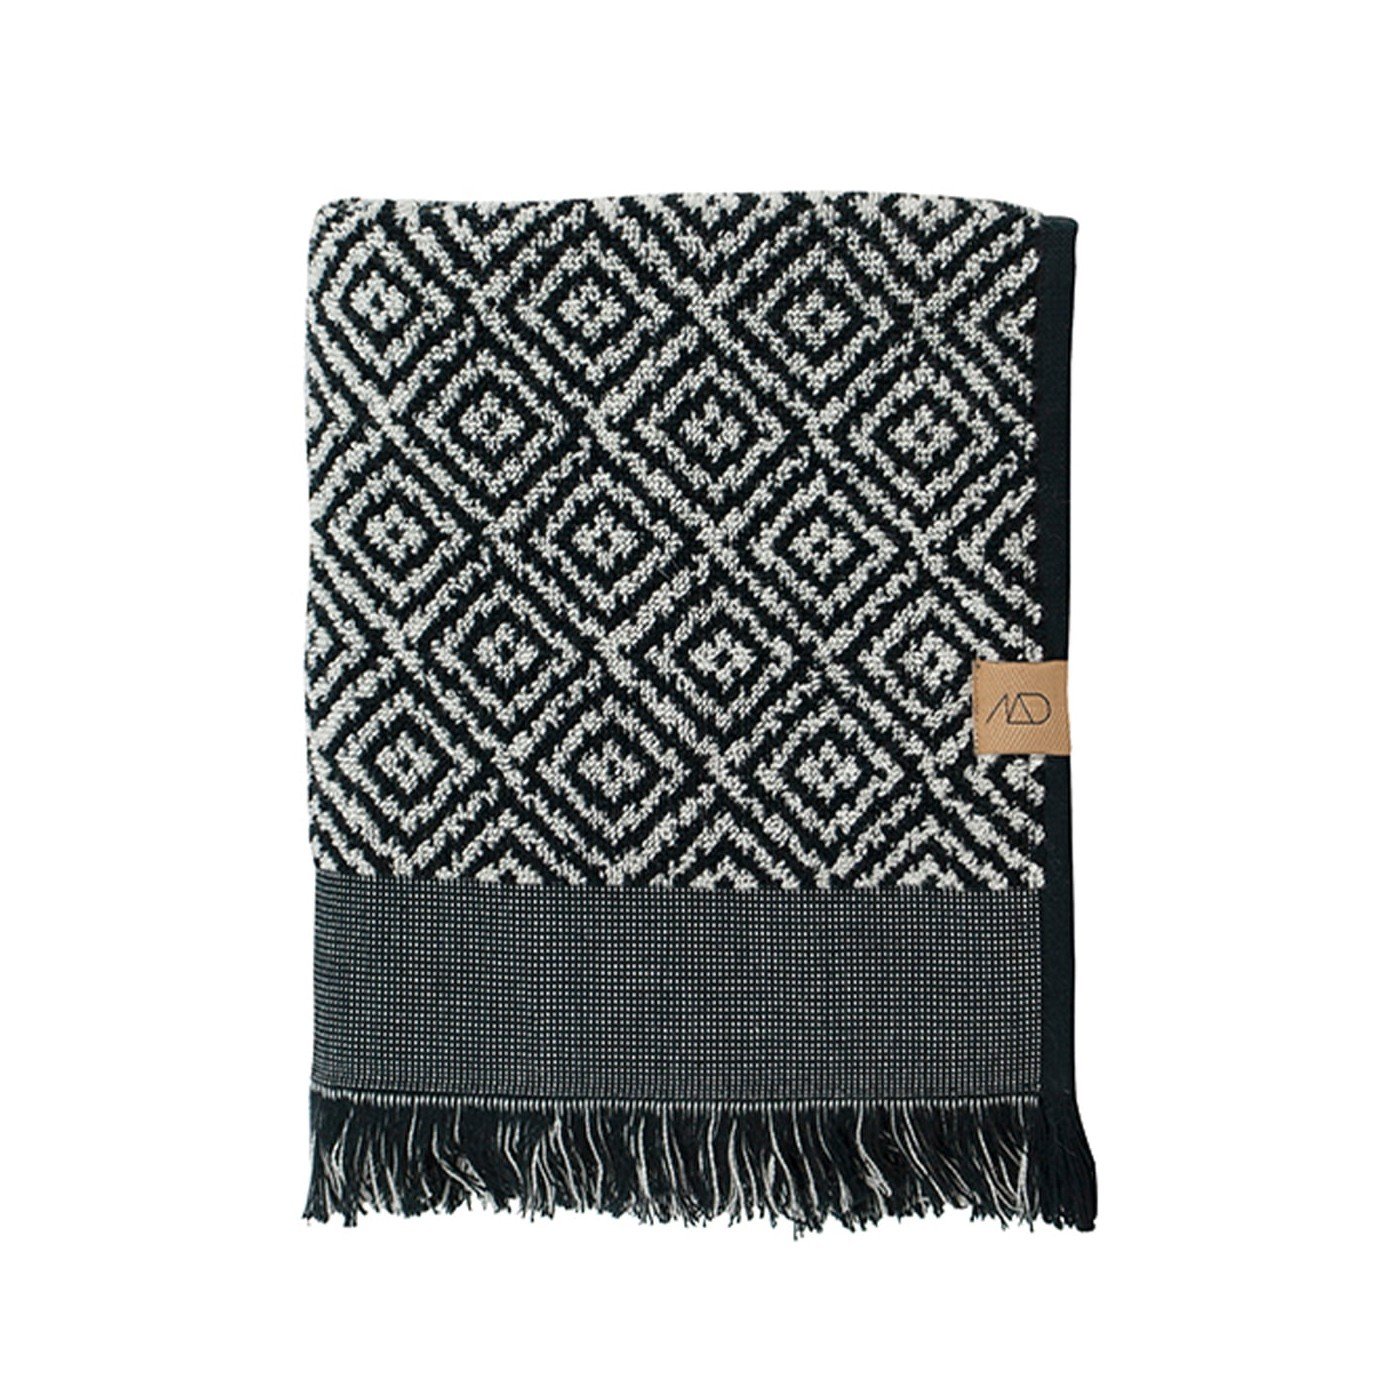 Mette Ditmer - Morocco Towel 50 x 95 cm - Black / White - Hjemme og kjøkken